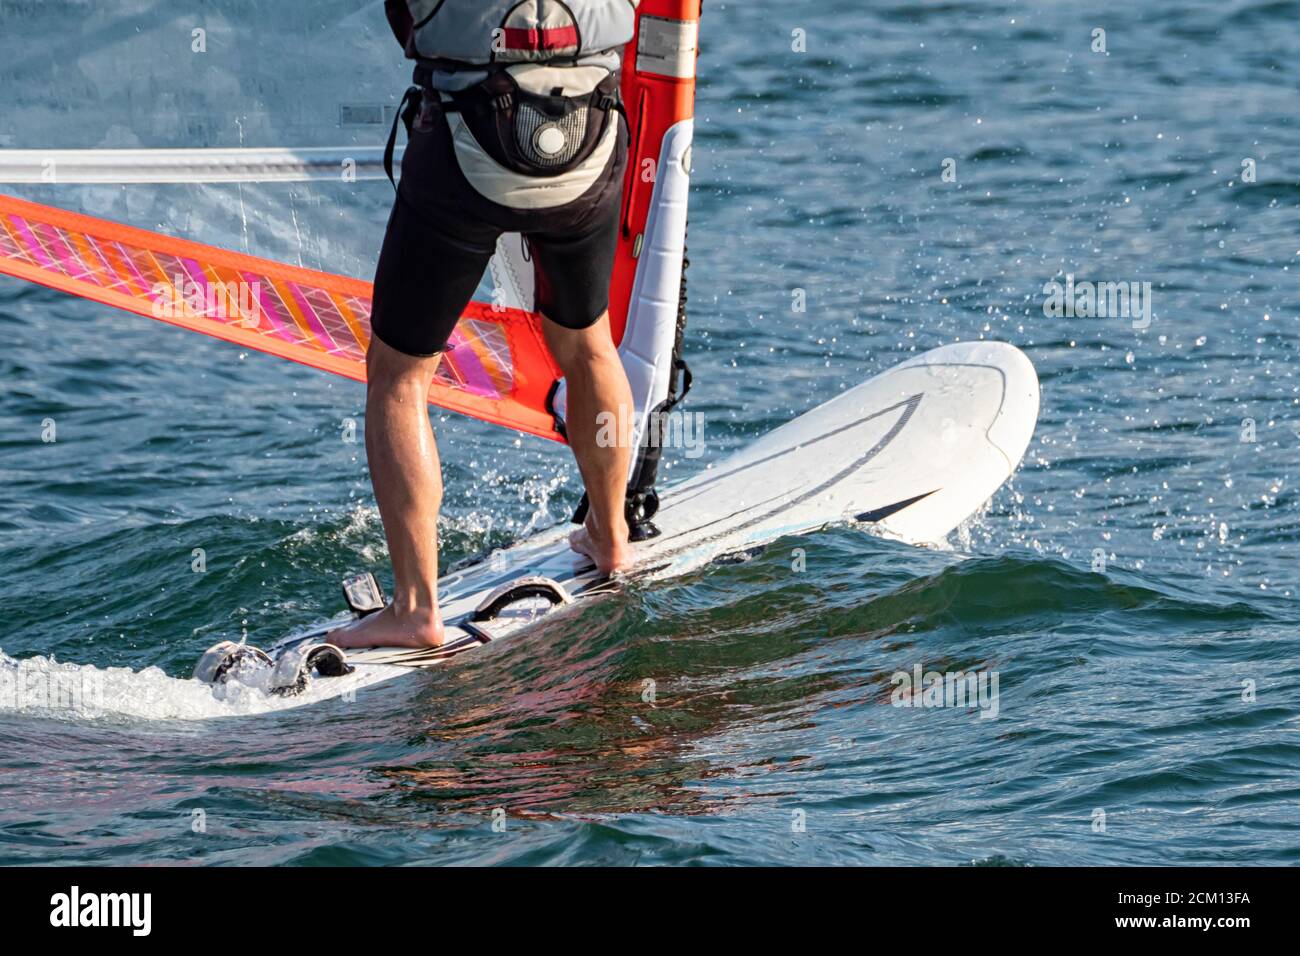 Detalle de la escena de windsurf de la tabla de surf Foto de stock